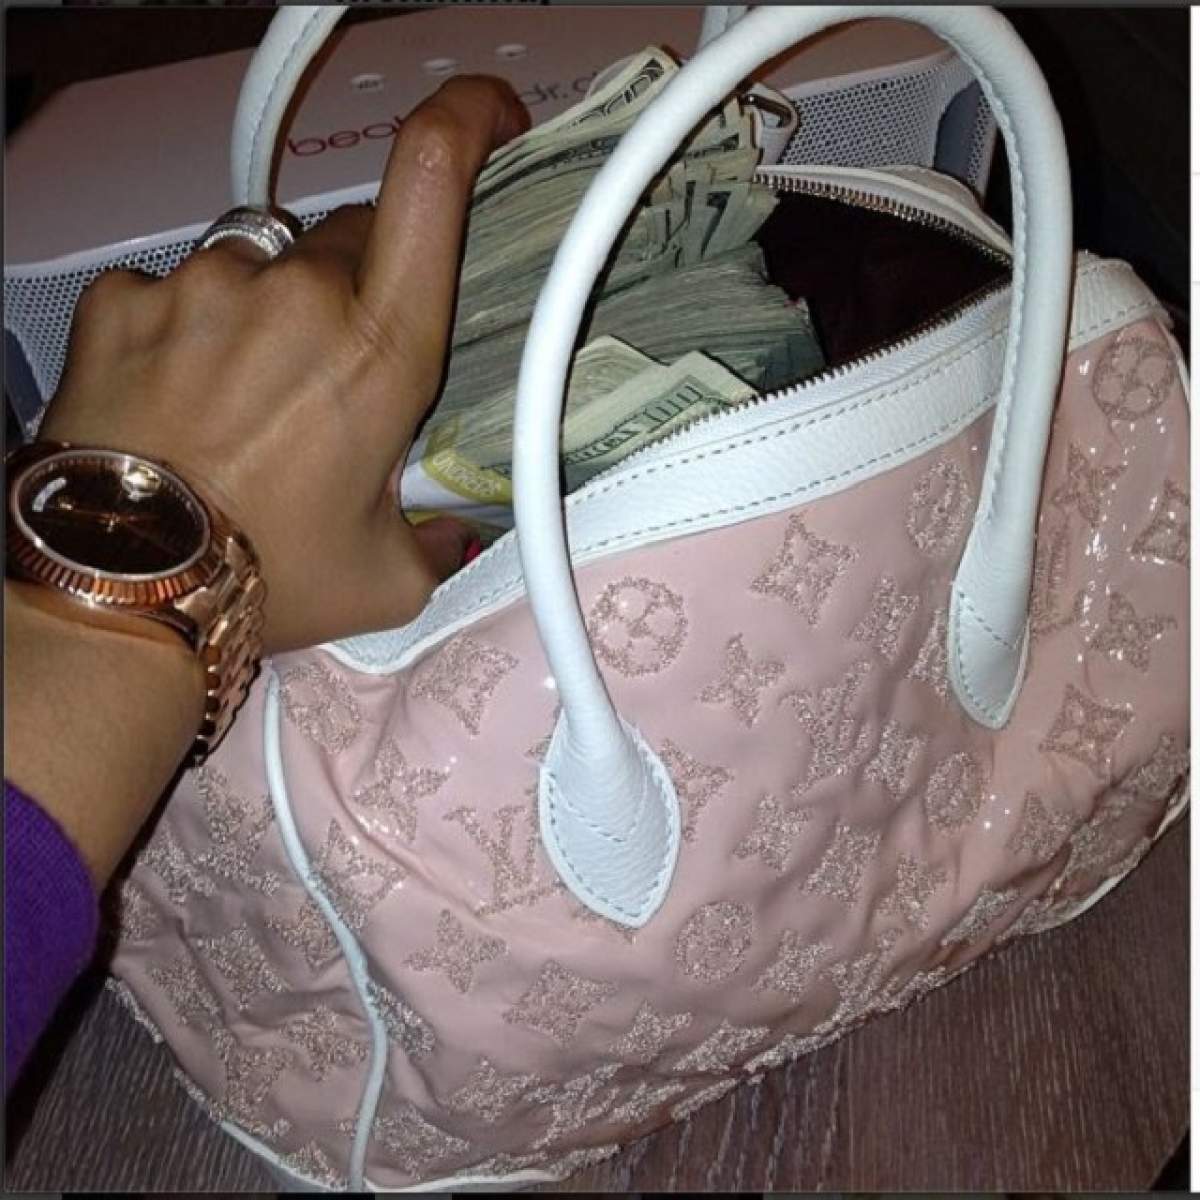 Umblă cu mii de dolari în geantă şi nu îi este frică de hoţi! / Foto